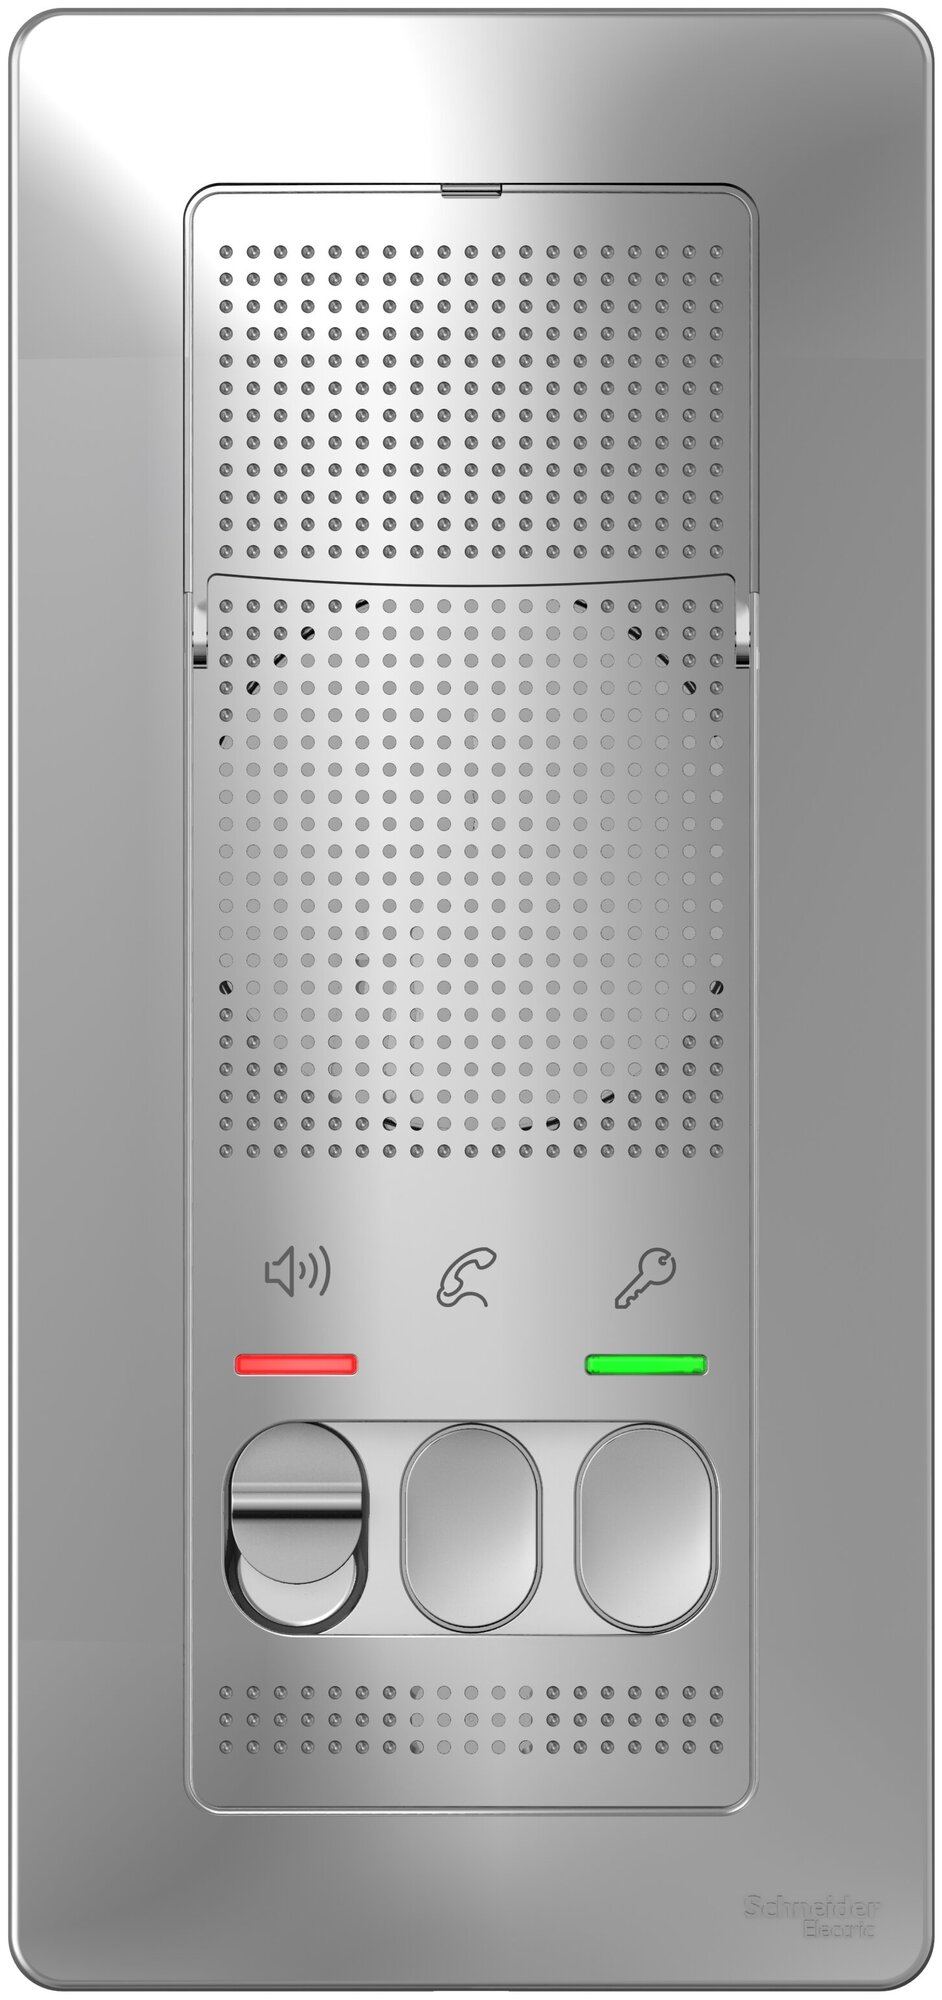 Аудиодомофон Schneider Electric Blanca, переговорное устройство, цвет Алюминий. SE BLNDA000013 (батарейки в комплекте)